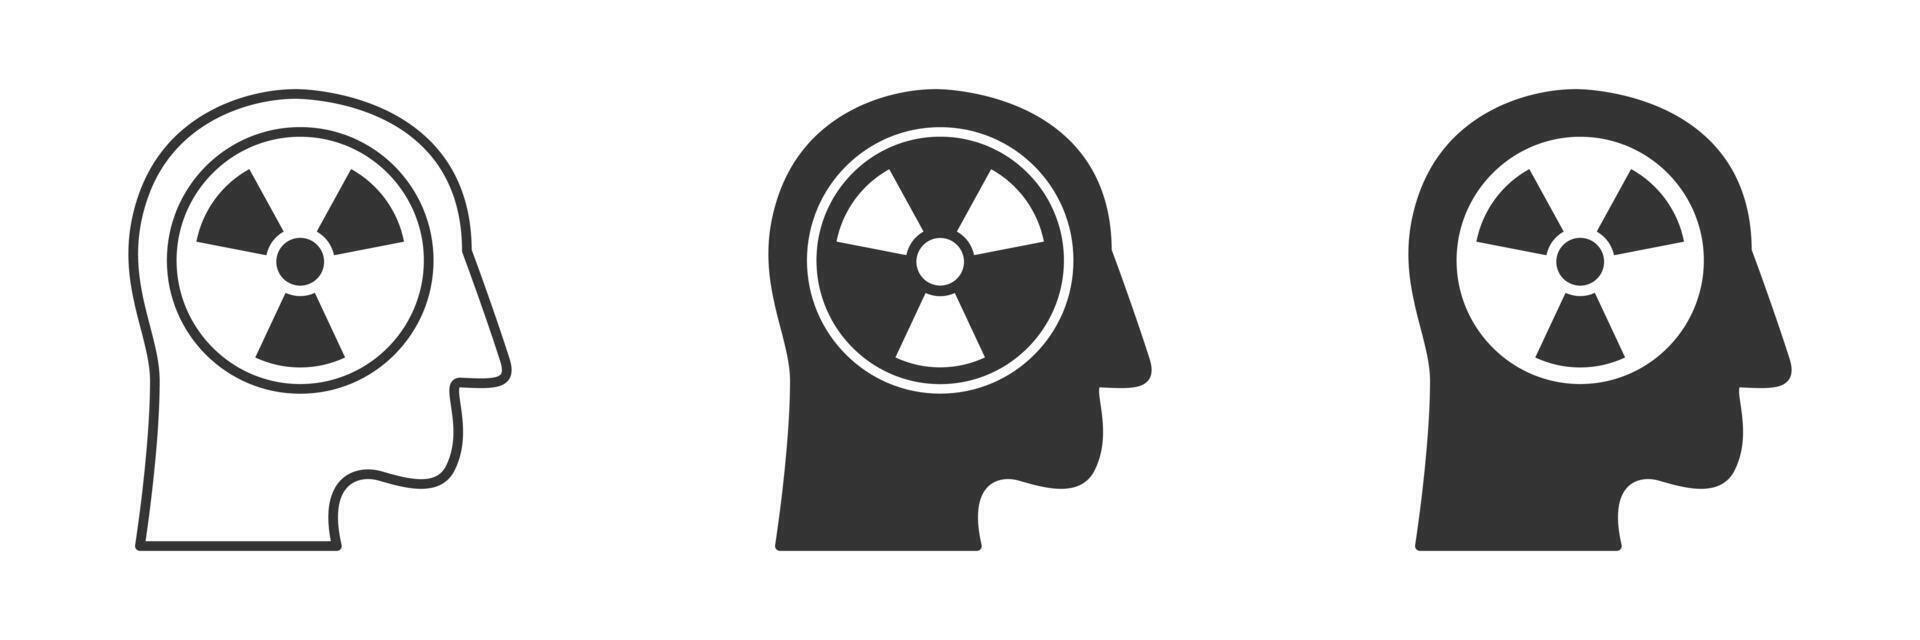 Humain tête icône avec radiation symbole à l'intérieur. vecteur illustration.